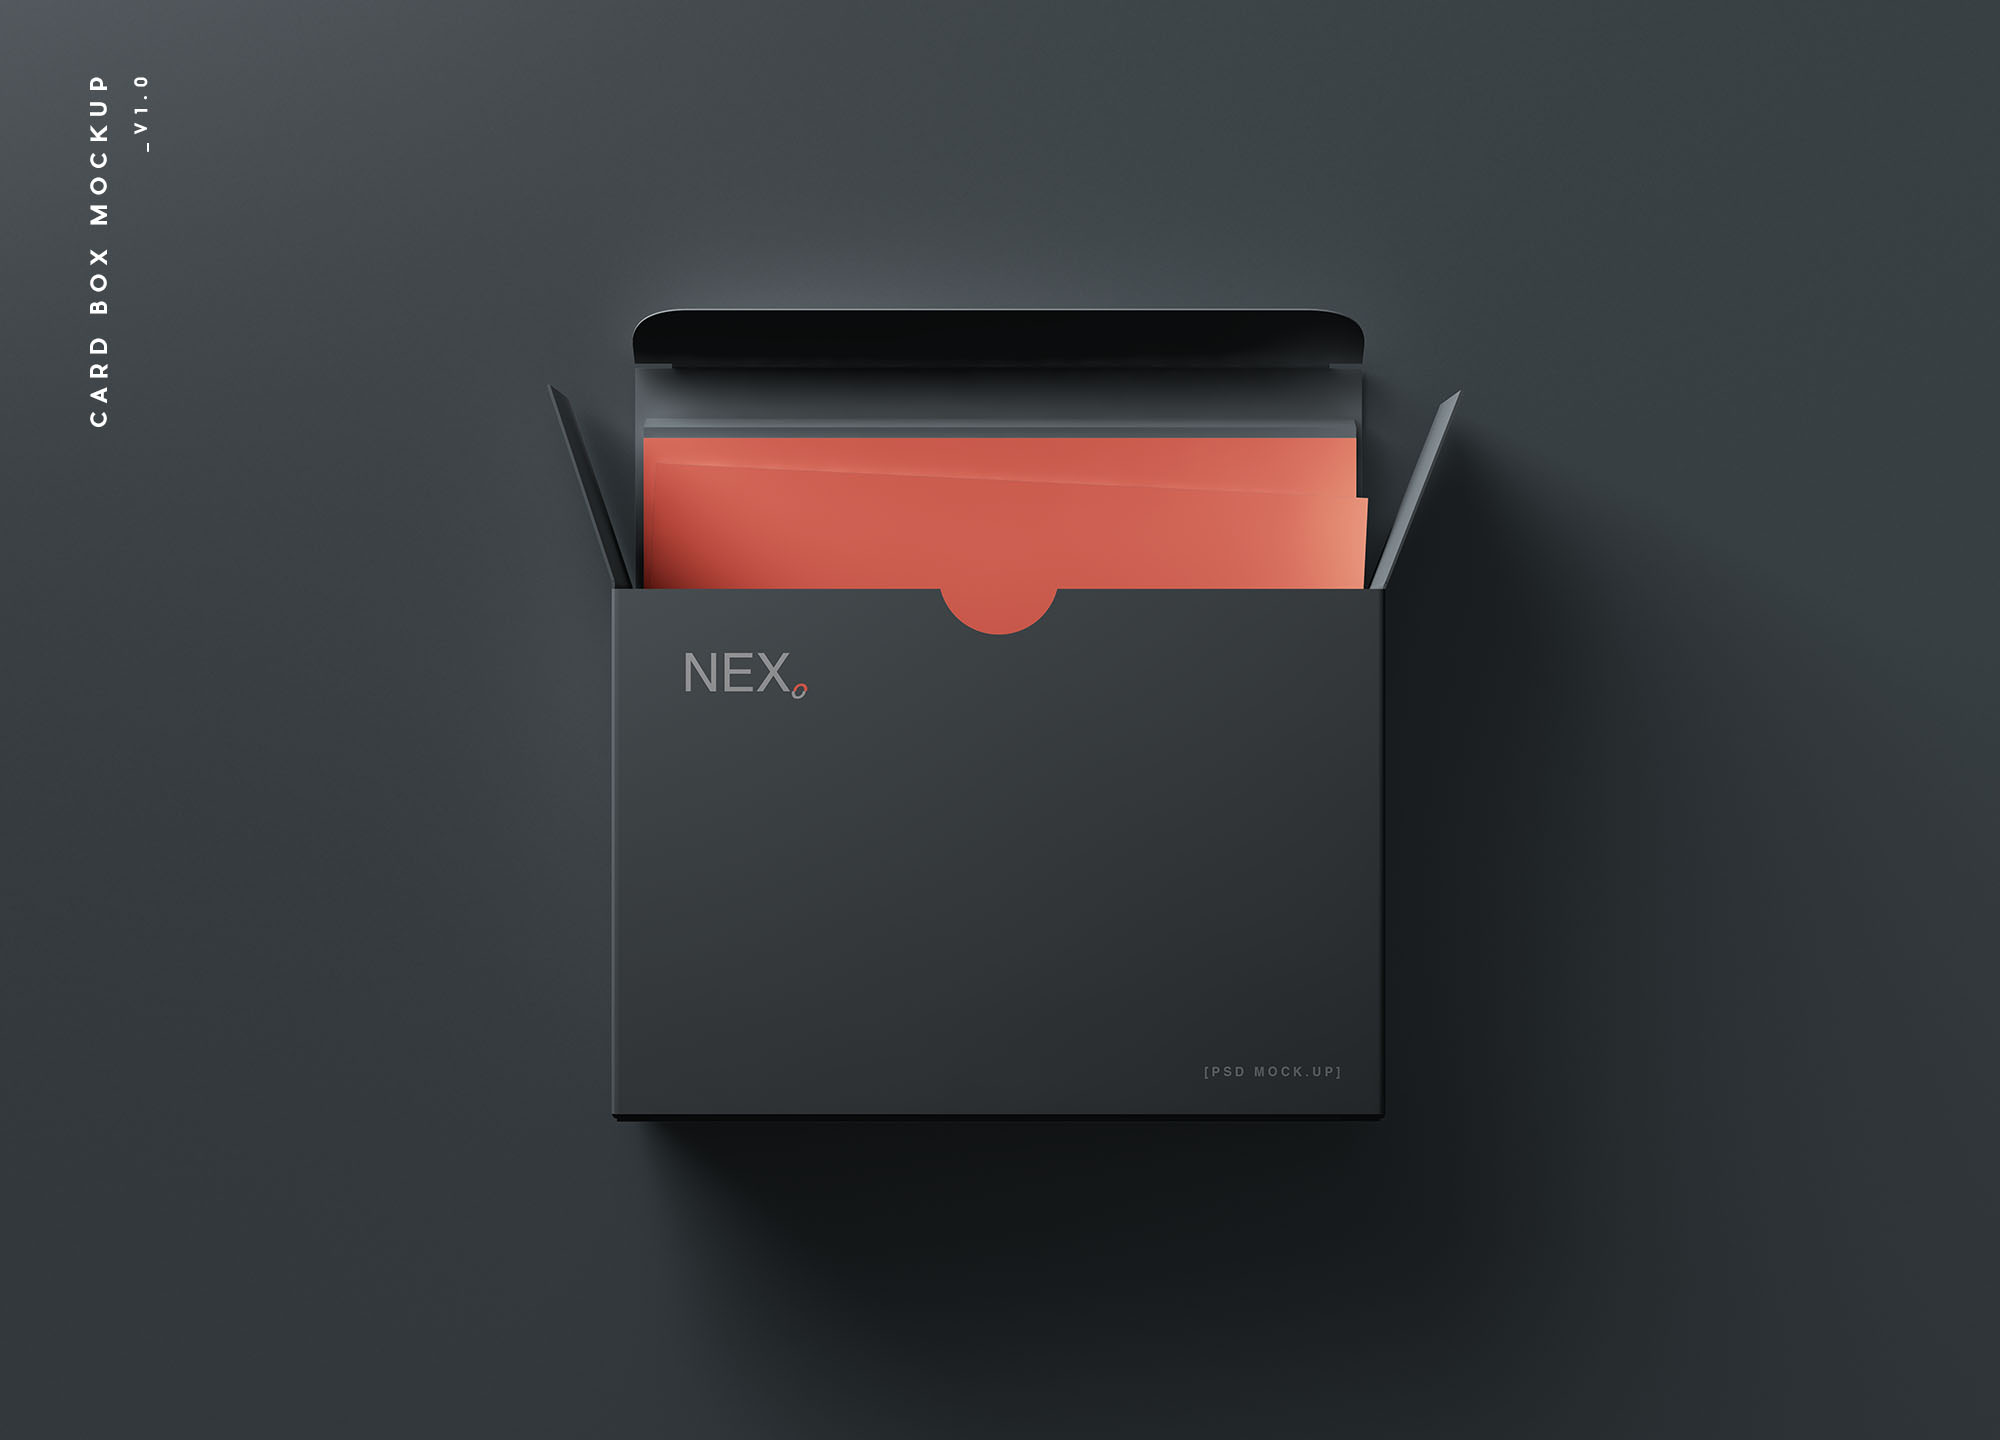 卡片包装盒外观设计效果图素材库精选 Card Box Mockup插图